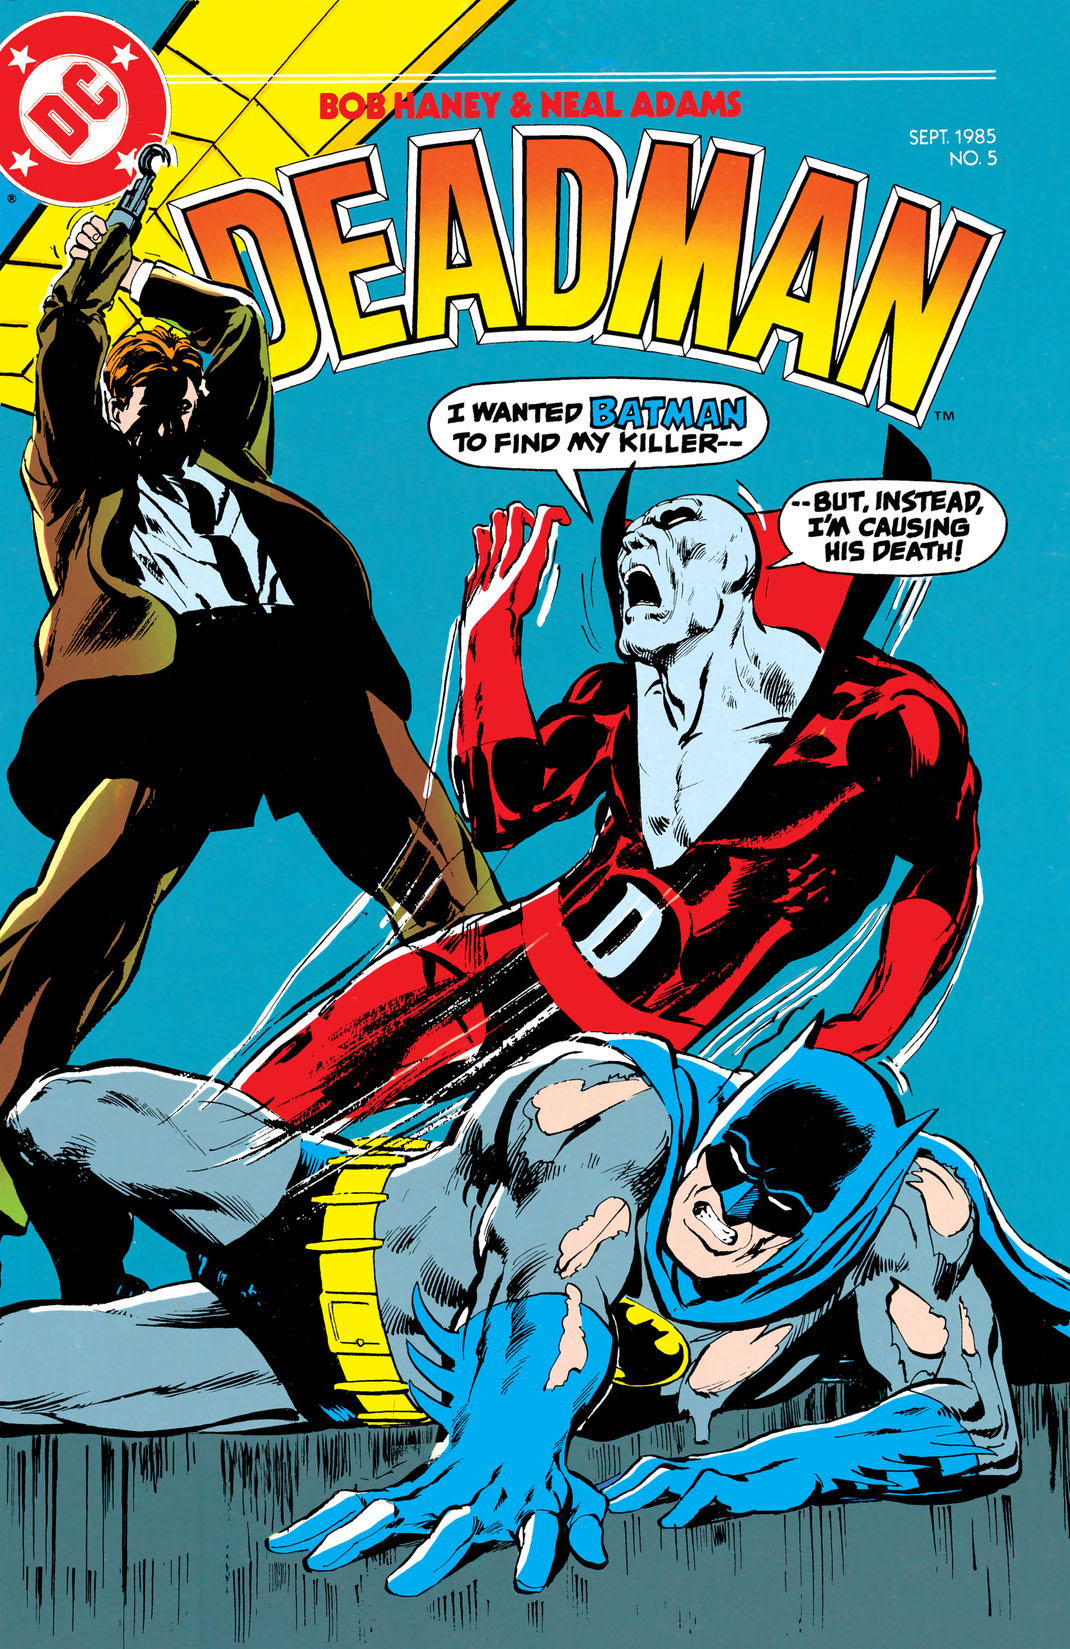 Deadman (1985-1985) #5 preview images